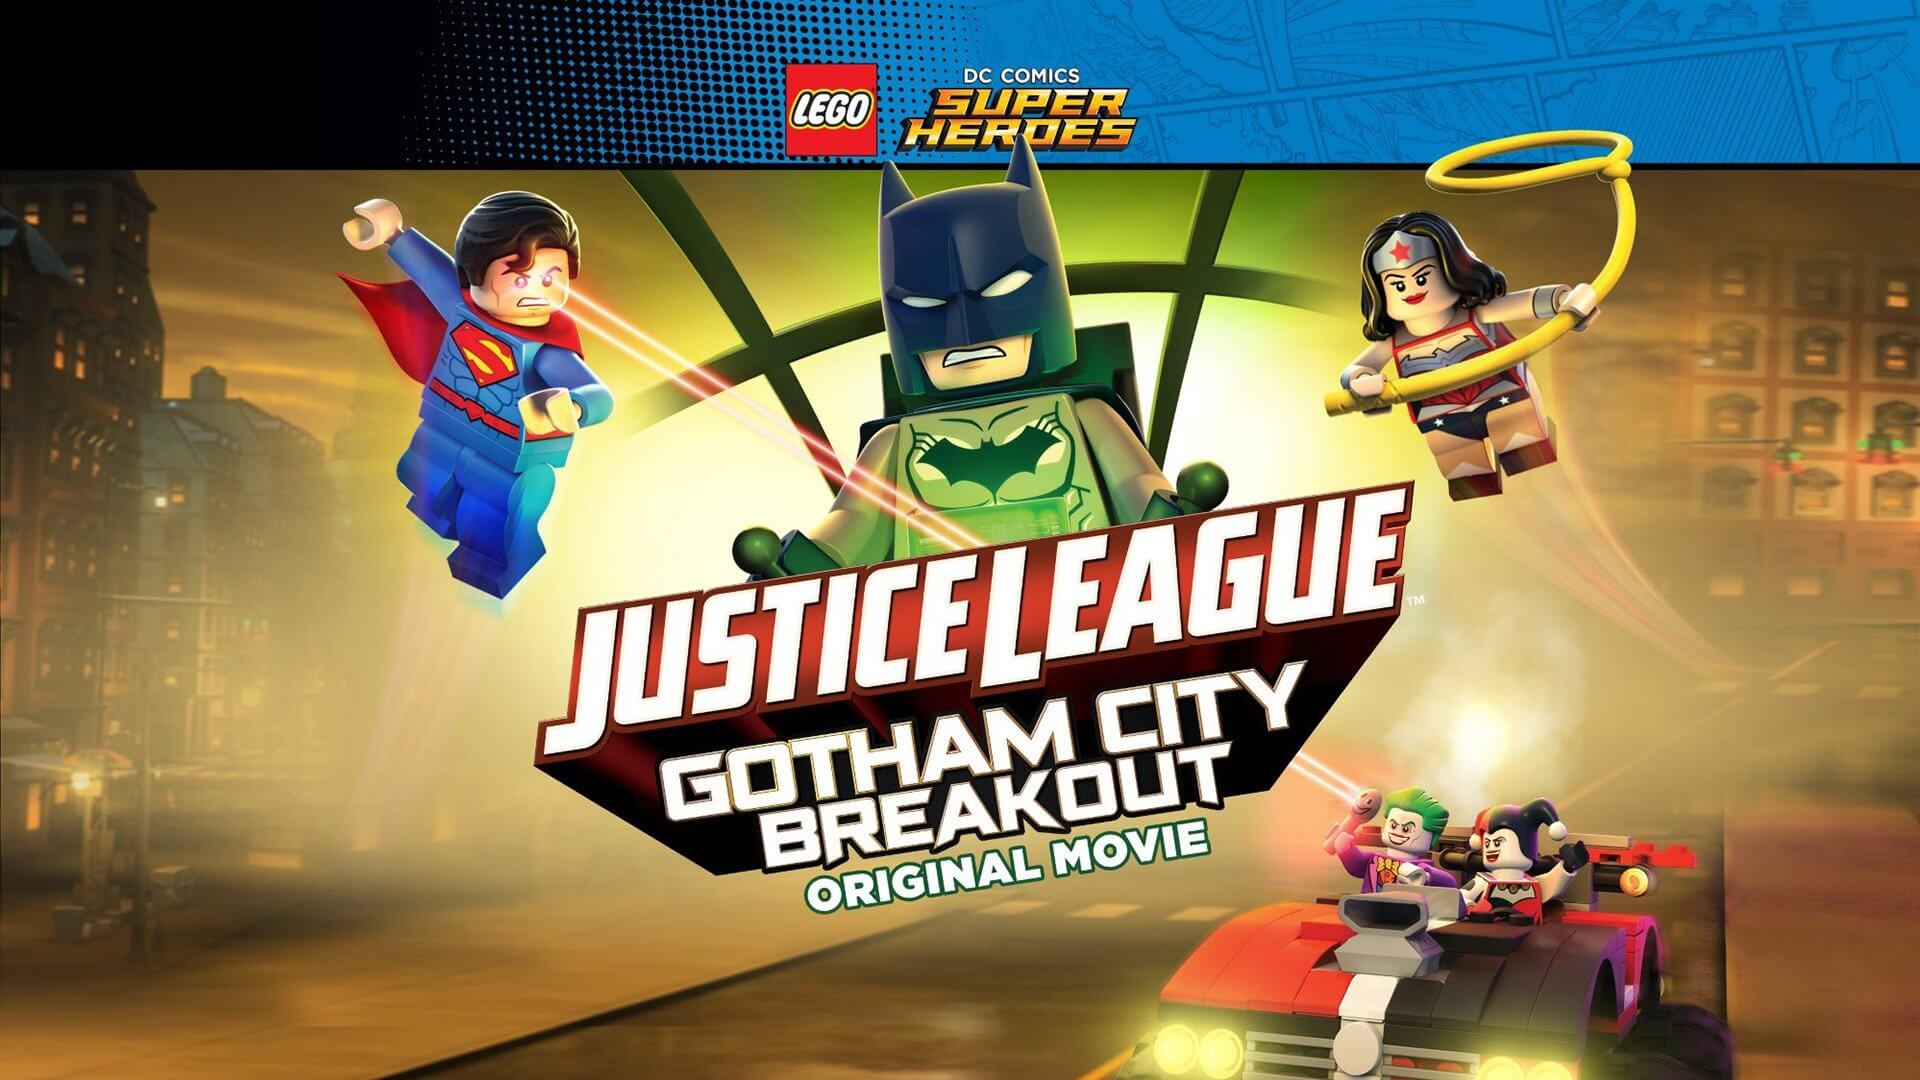 Lego DC Comics Superheroes- Justice League - Gotham City Breakout movie download